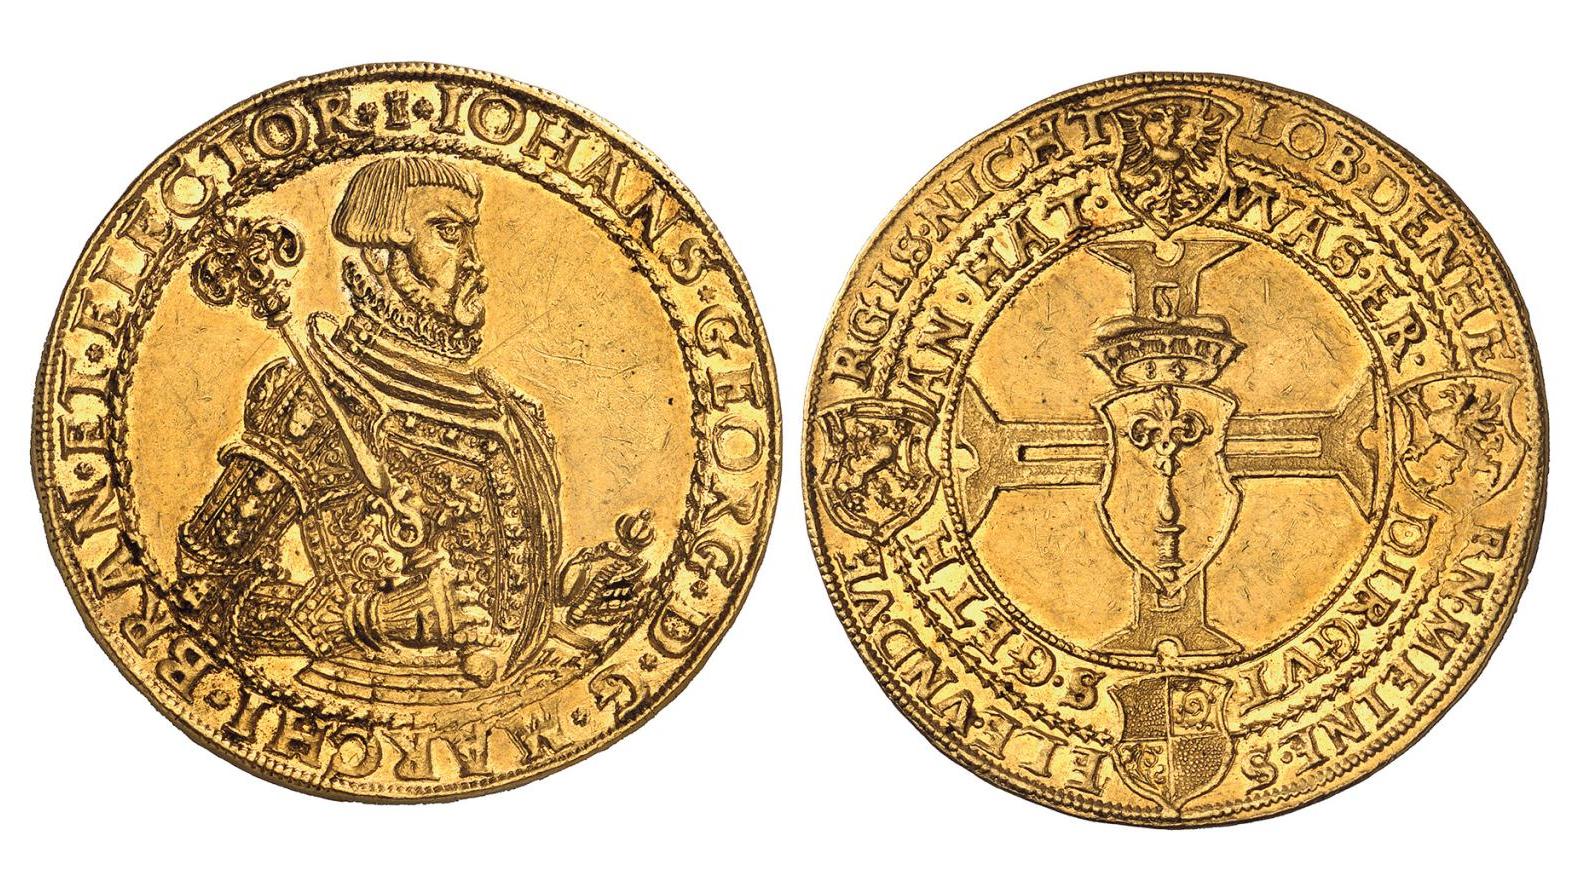 Berlin, Jean II Georges de Brandebourg (1571-1598), portugalöser de 10 ducats, 1584,... Un portugais d’or du Brandebourg